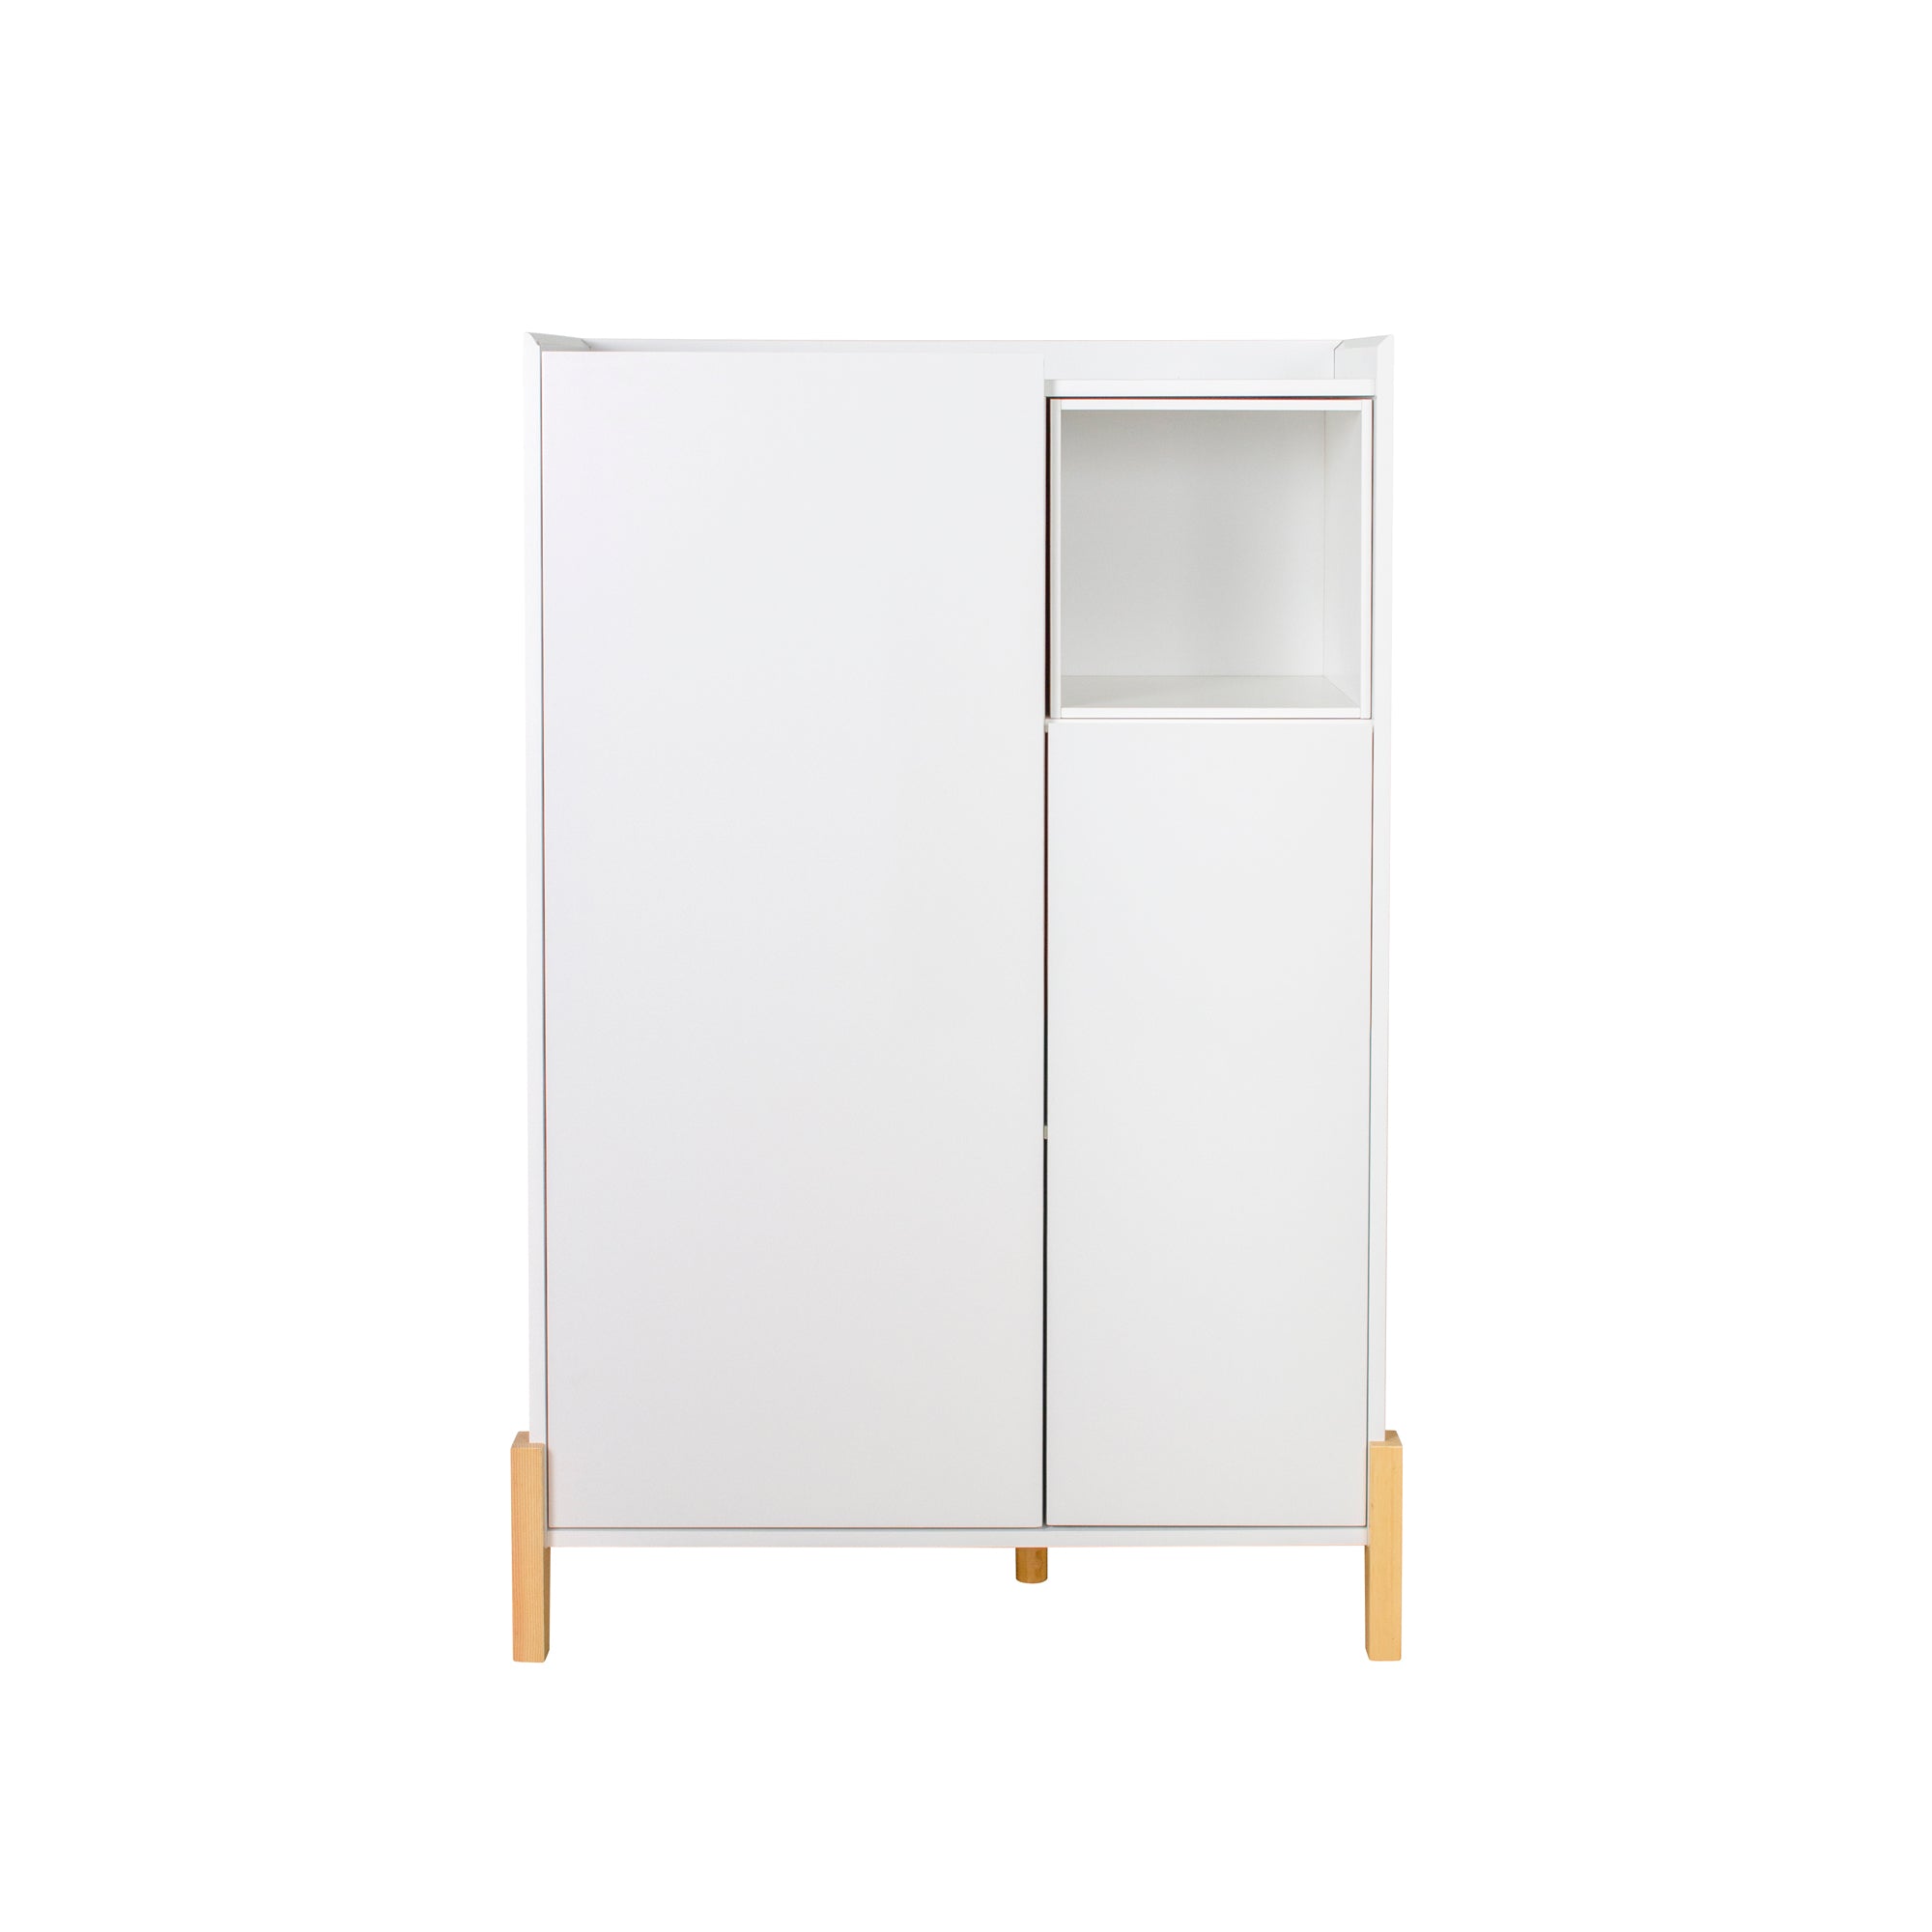 Floor Storage Cabinet with 2 Door and 1 Open Shelf, White-Boyel Living